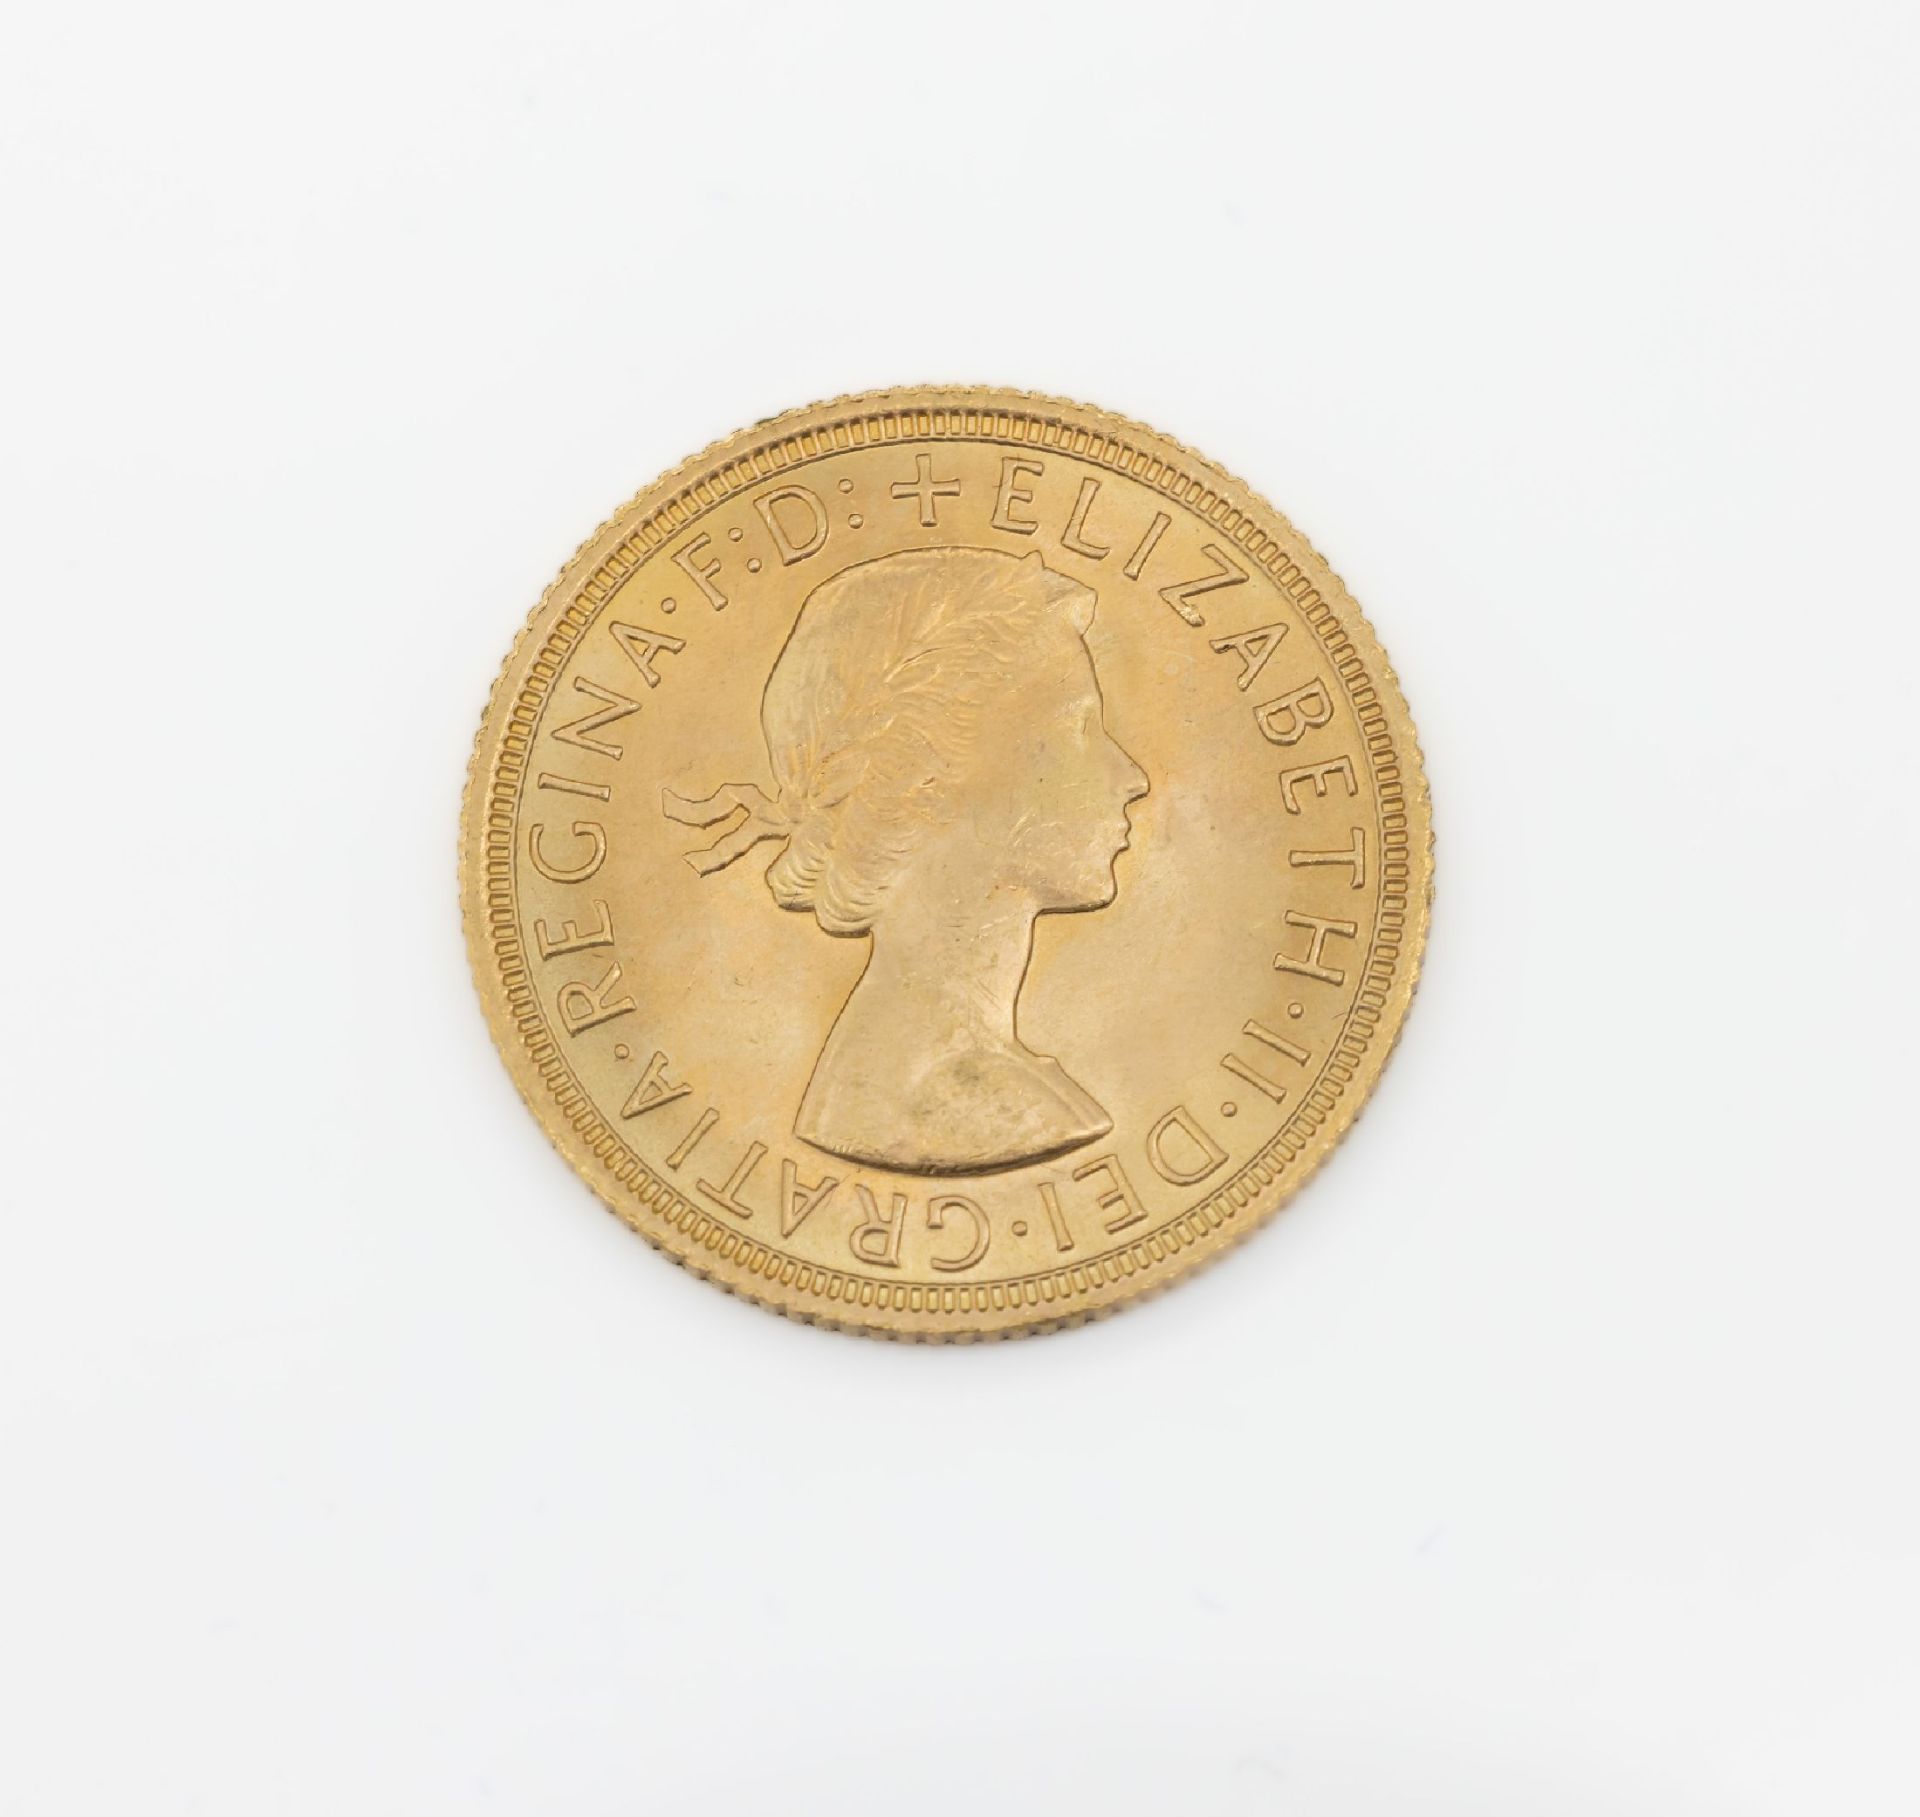 Goldmünze, Sovereign, Großbritannien, 1968, Elizabeth